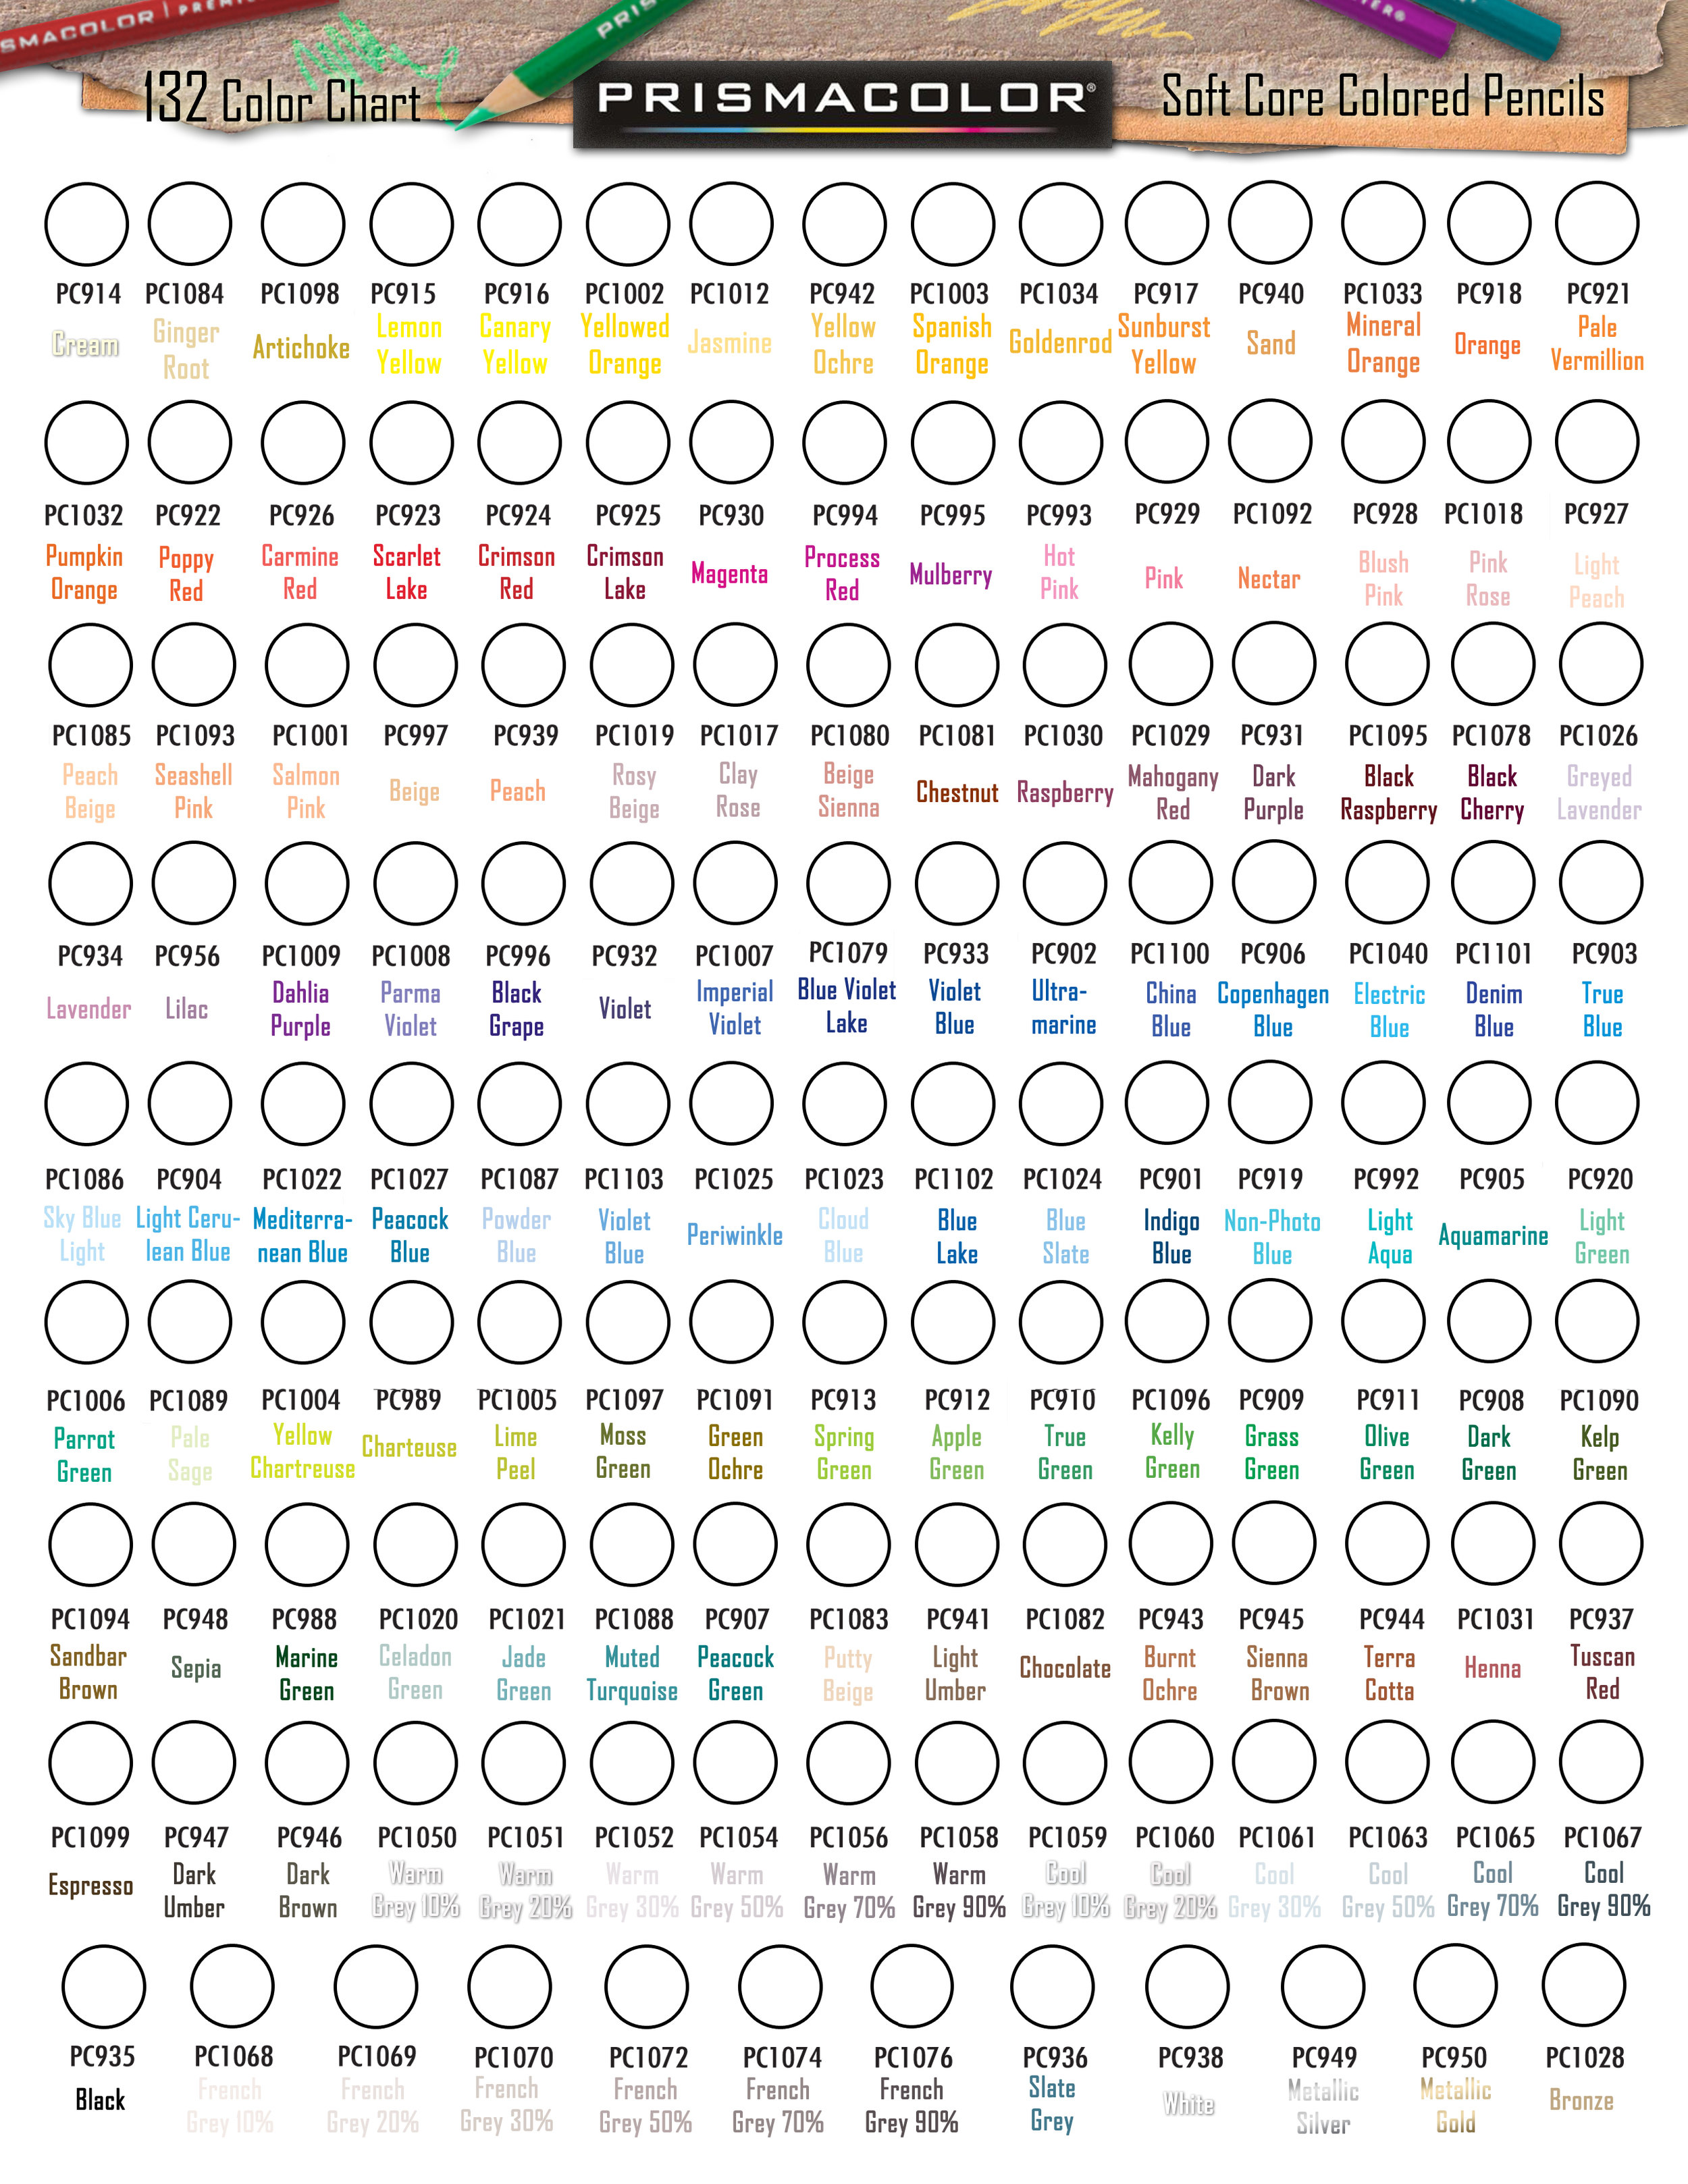 150 Prismacolor Premier Colored Pencils Swatch Chart 